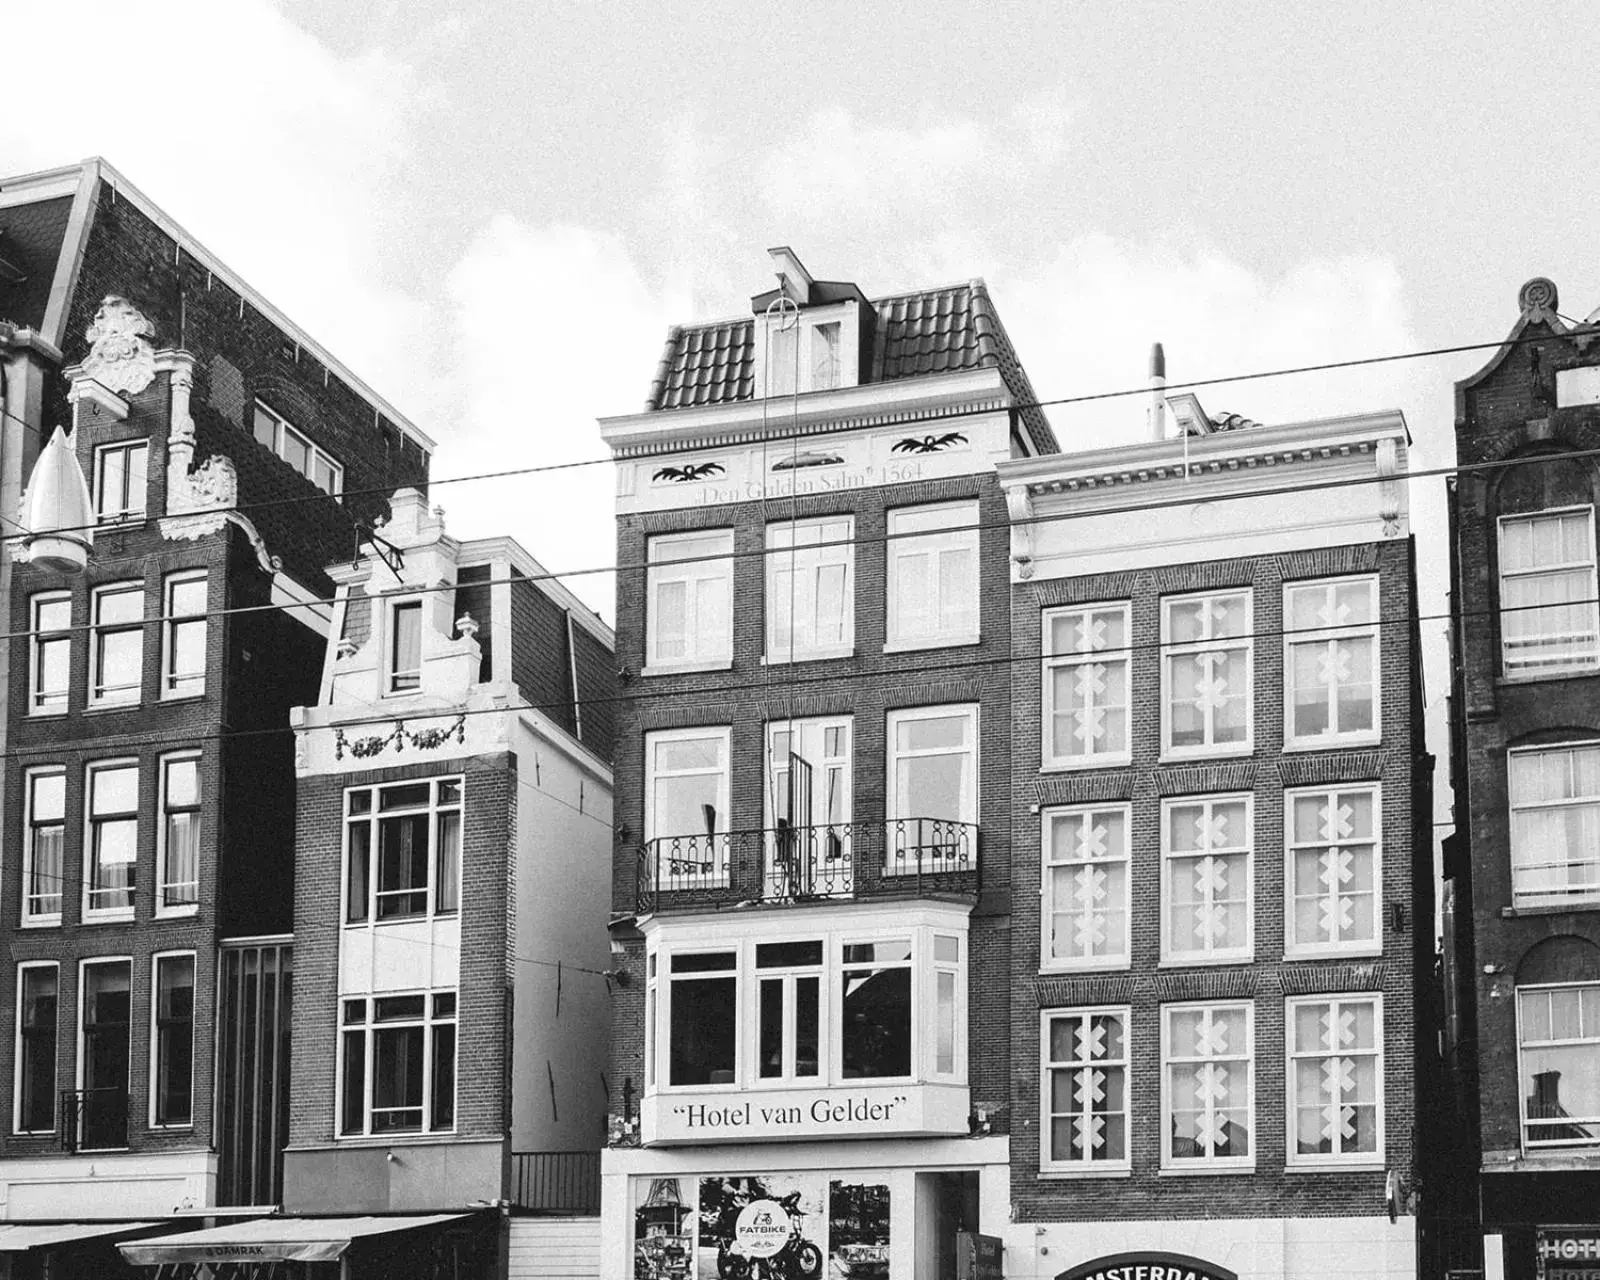 Property Building in Hotel van Gelder